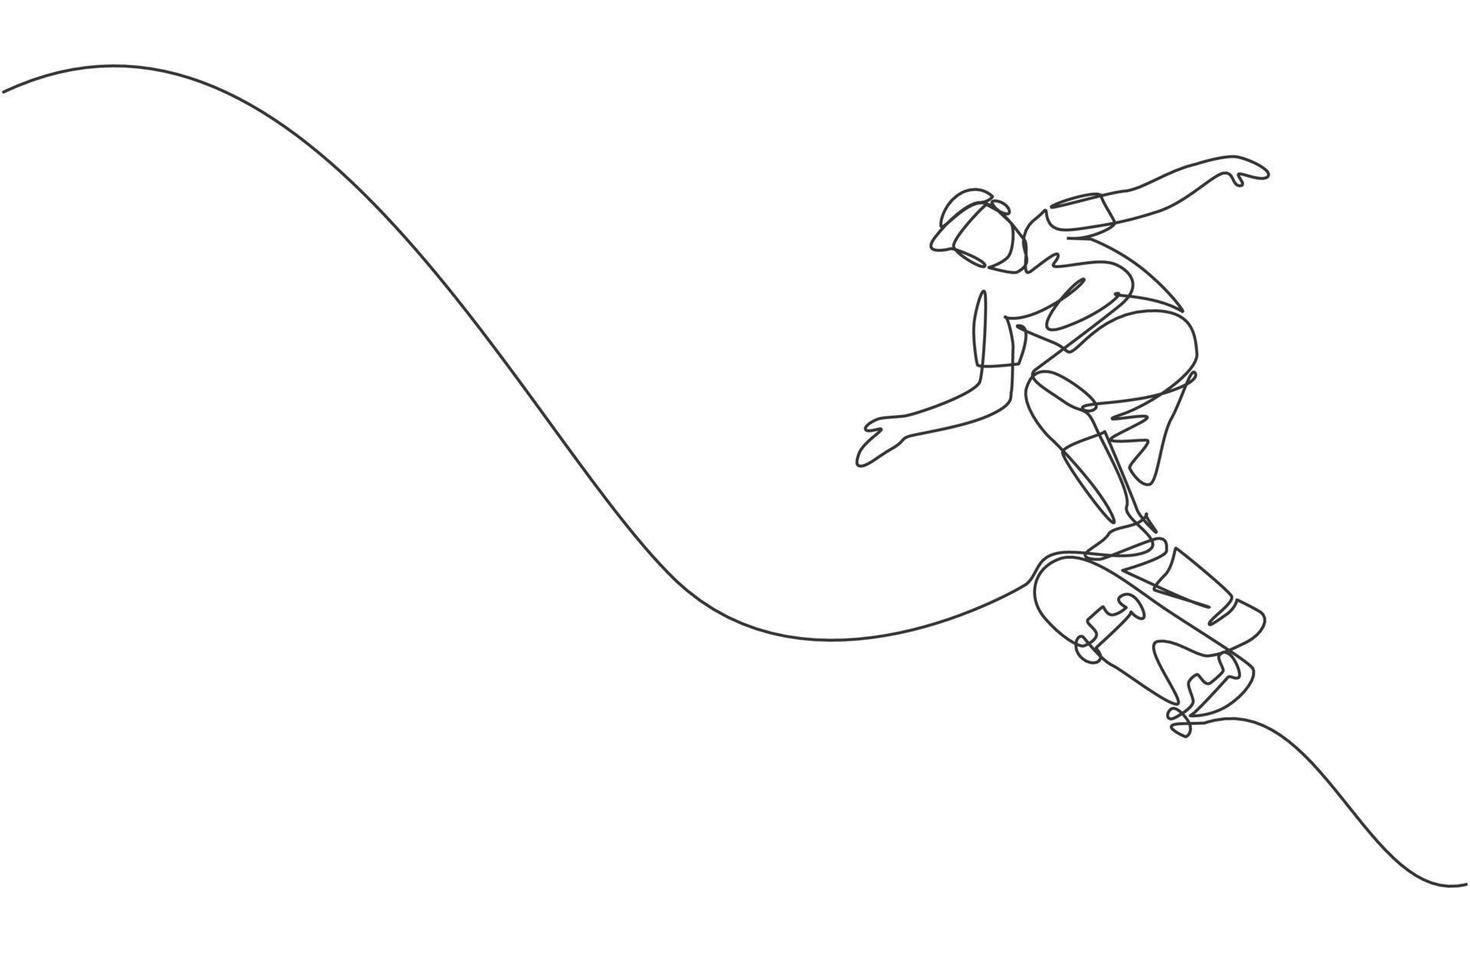 un dessin en ligne continu d'un jeune skateur cool faisant du skateboard et sautant pour faire un tour dans le skatepark. concept de sport adolescent extrême. illustration vectorielle de dessin dynamique à une seule ligne vecteur